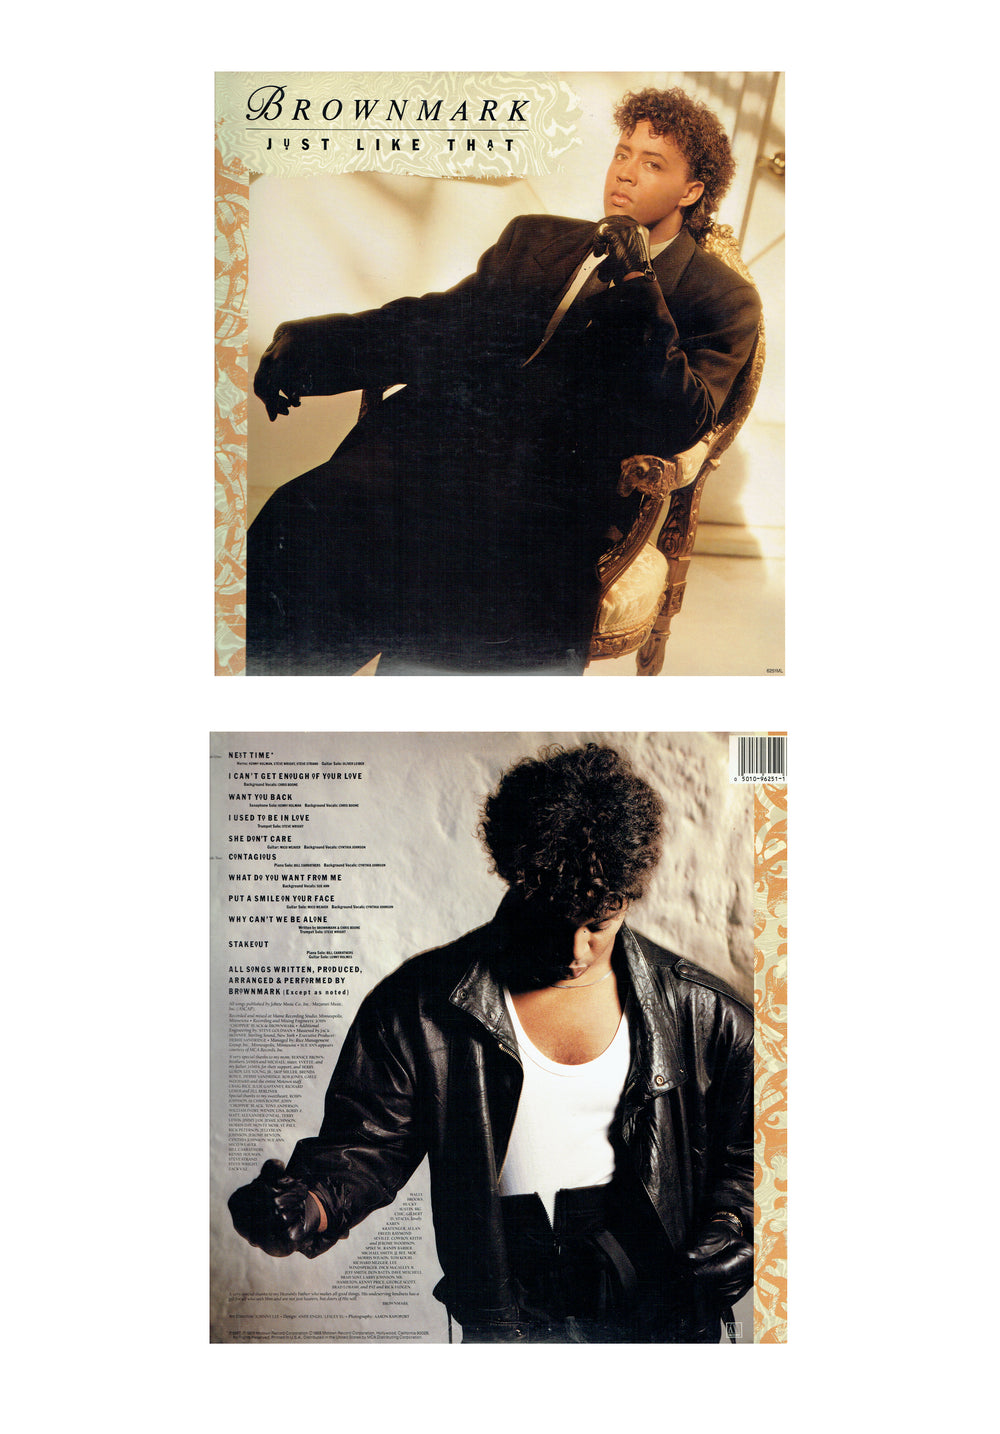 Prince – Brownmark – Just Like That Vinyl LP Album Europe Preloved: 1988